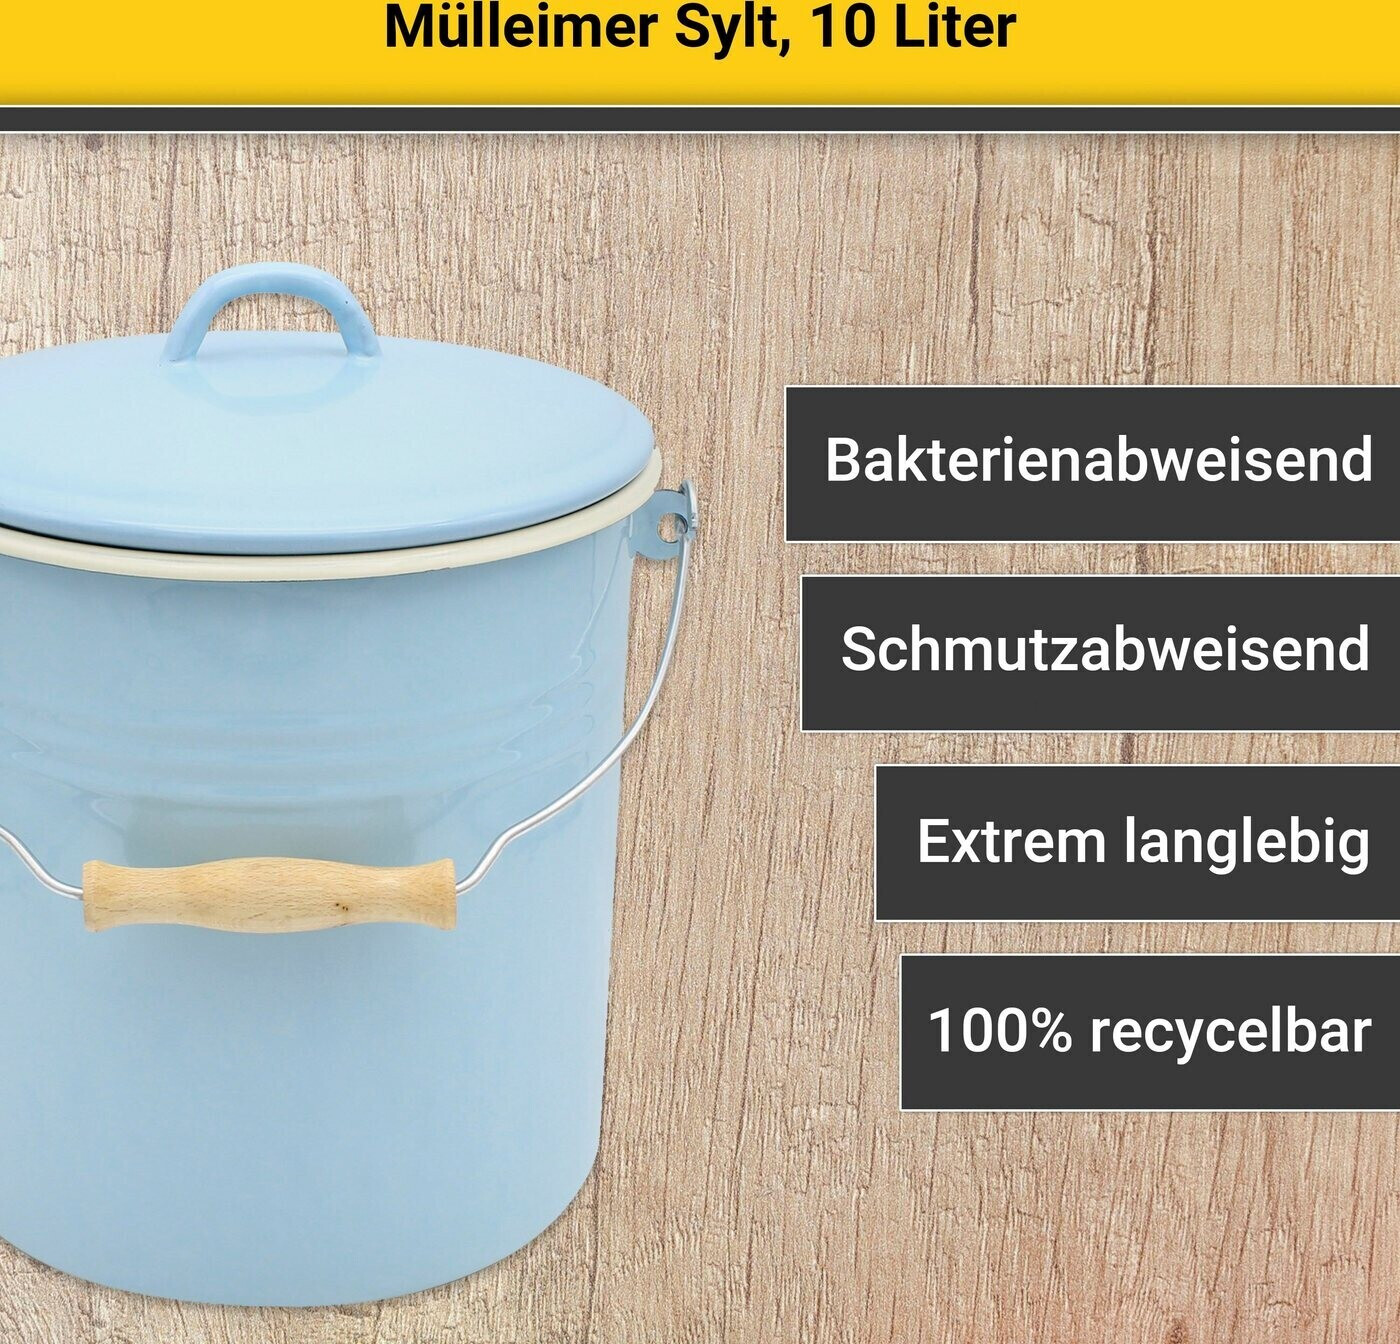 Mülleimer Serie TRIEST emailliert, 10 Liter bei Marktkauf online bestellen